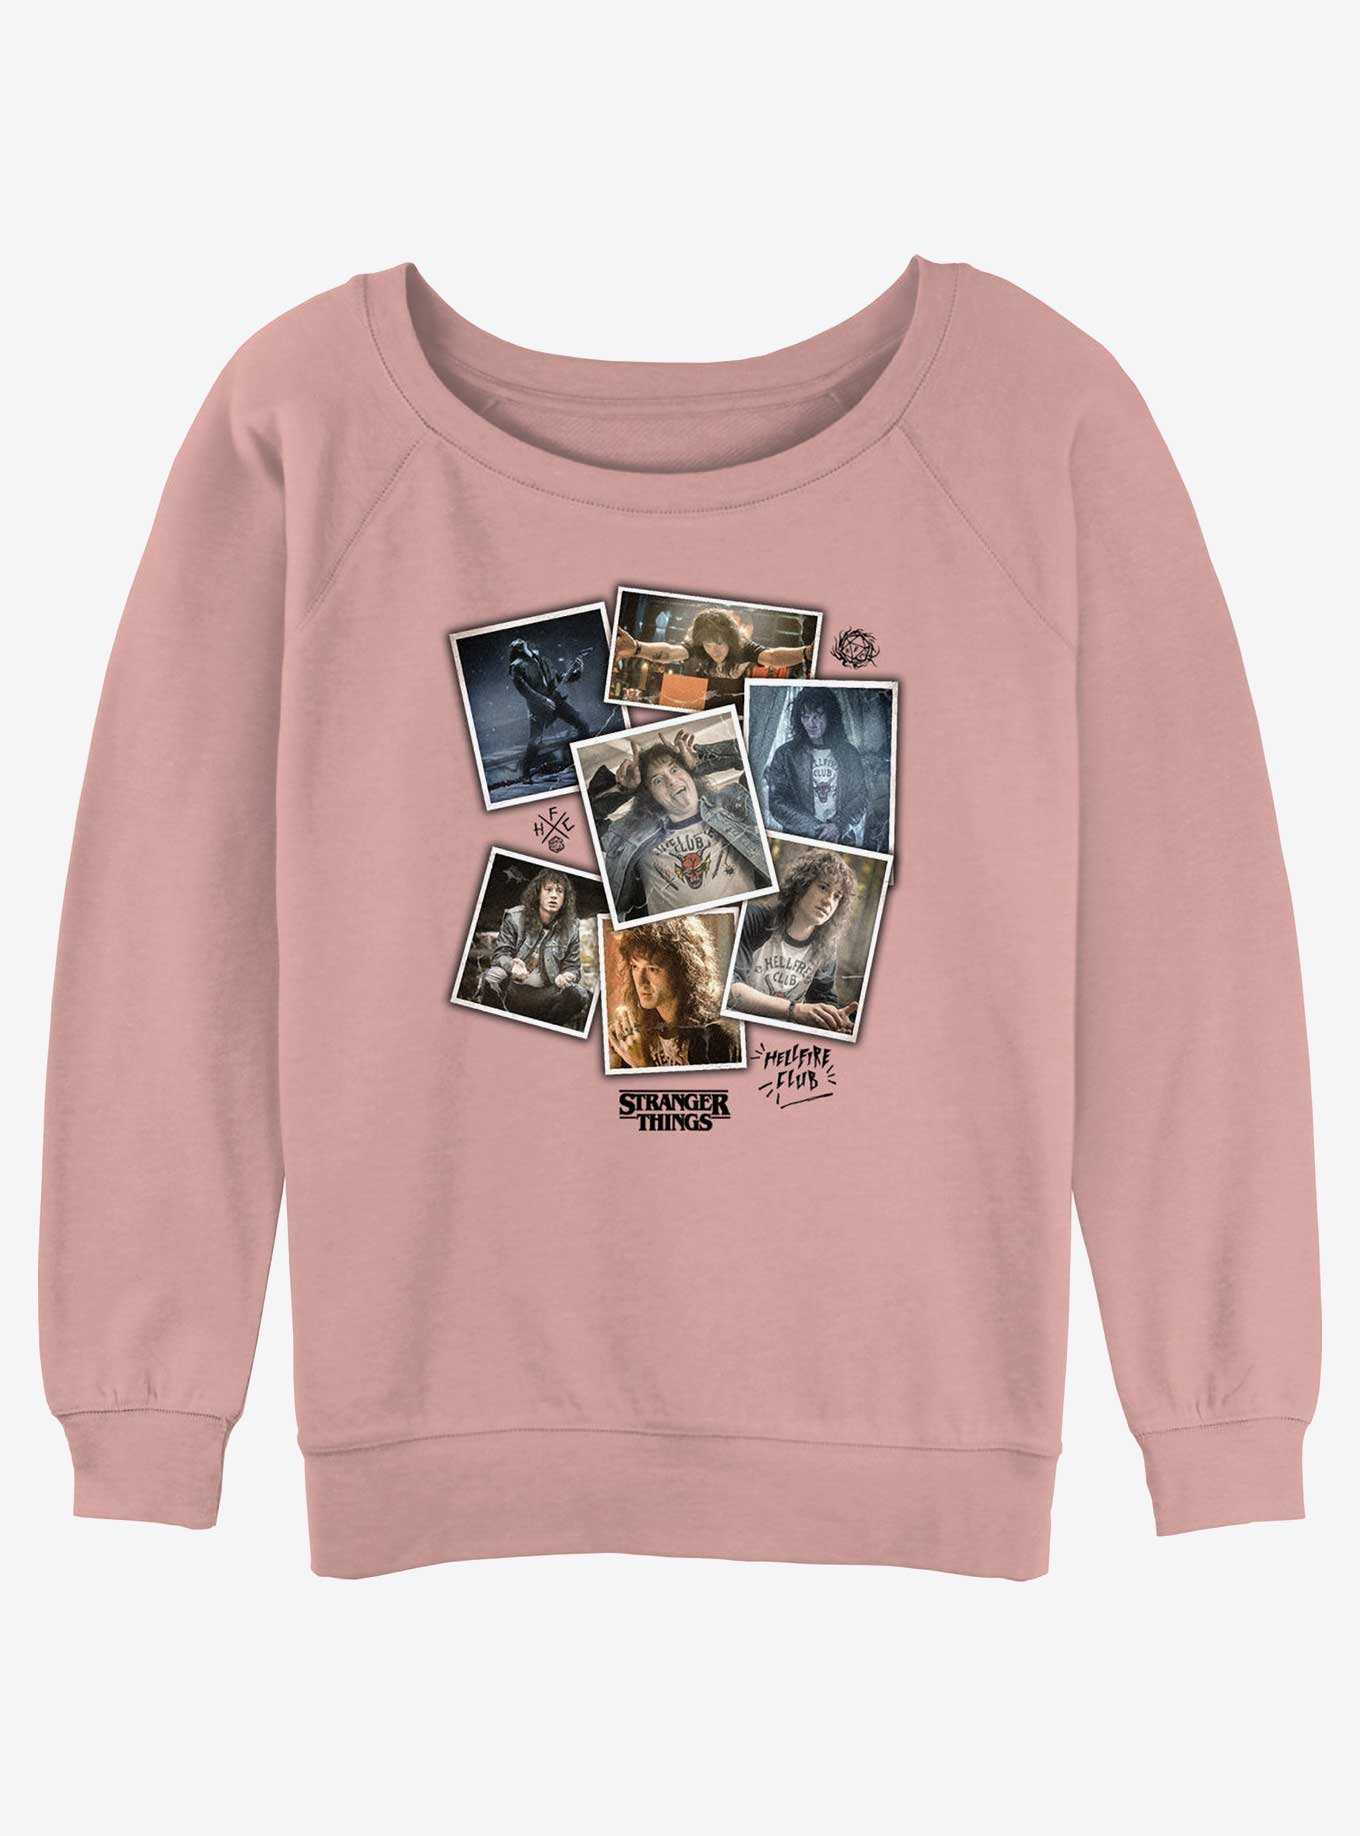 Stranger Things Eddie Munson Collage Girls Slouchy Sweatshirt, , hi-res